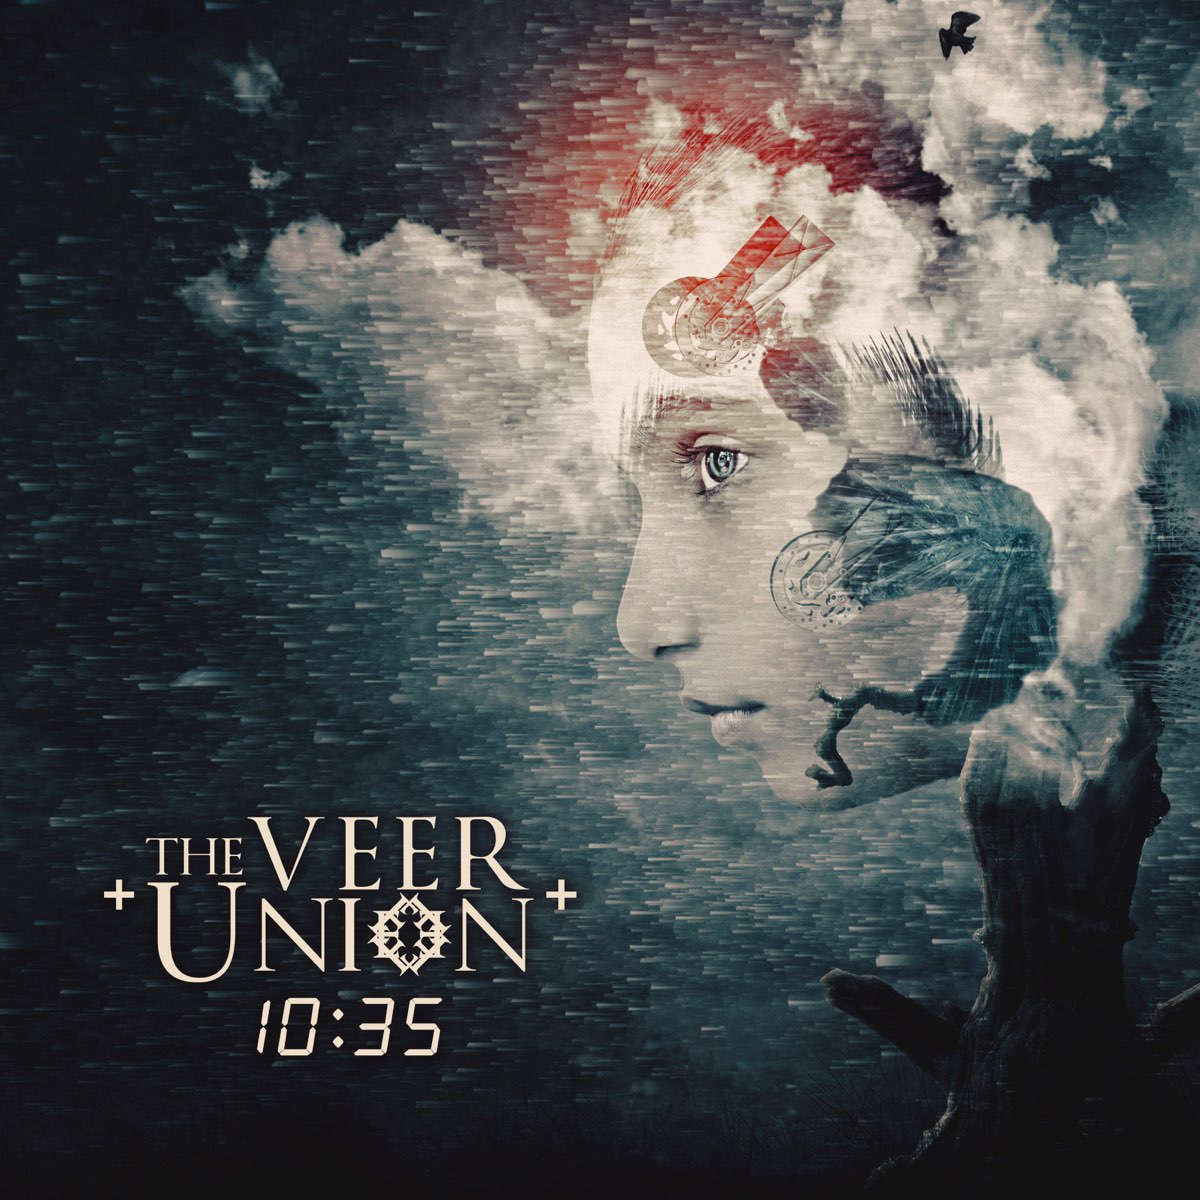 The veer union. The Veer Union фото. 10 35 The Veer Union. The Veer Union Bitter end.